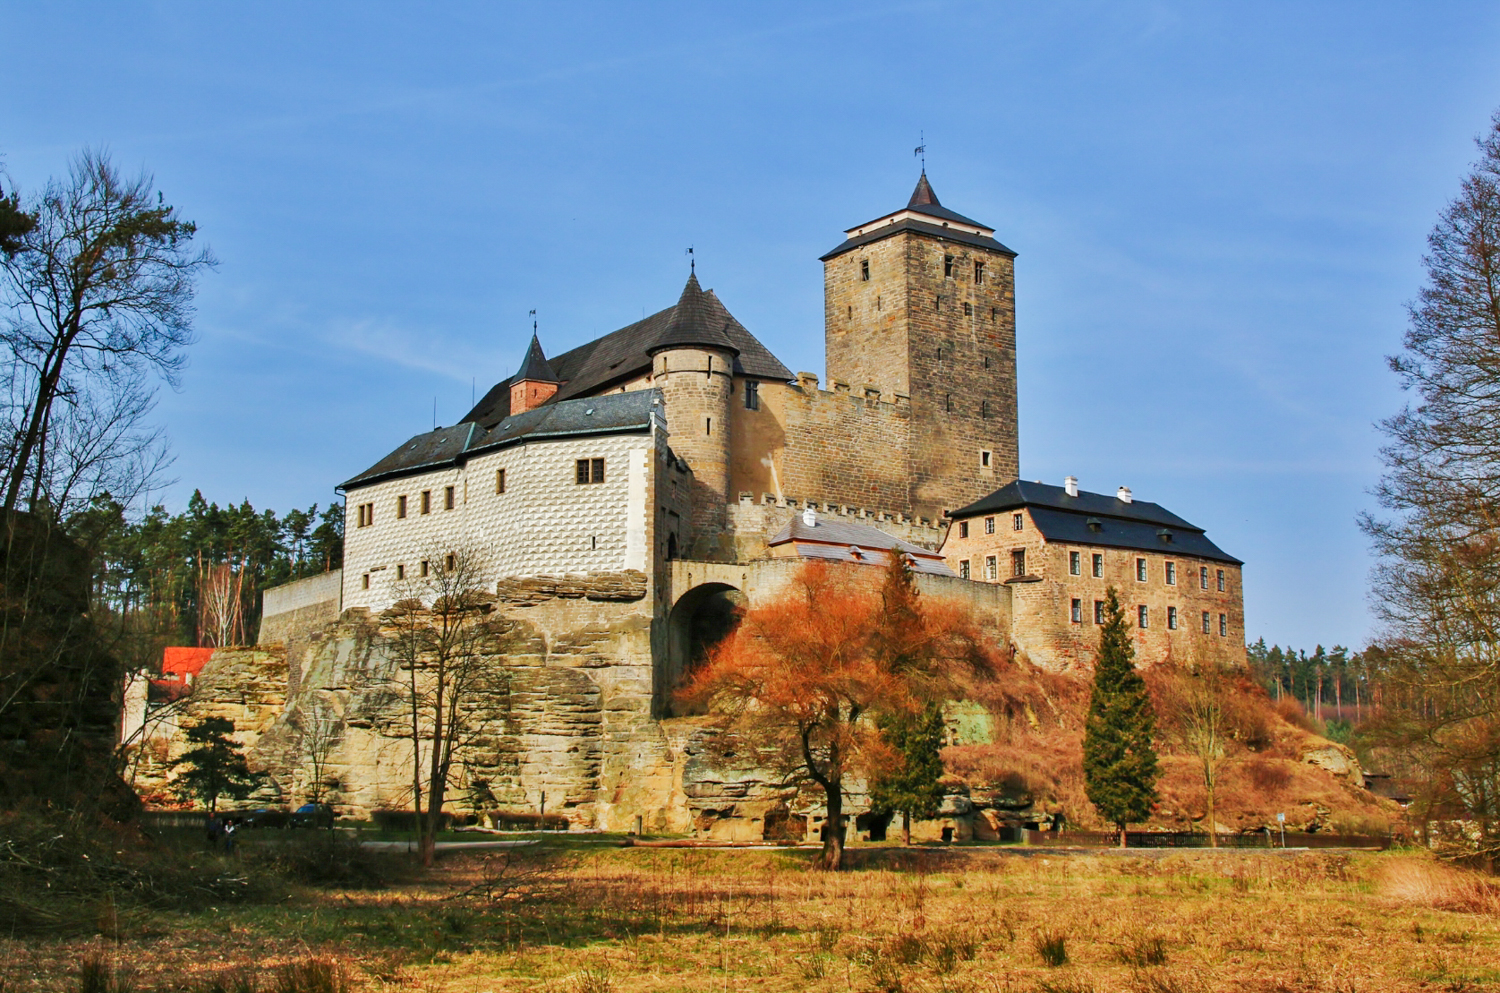 Castles in the Czech Republic